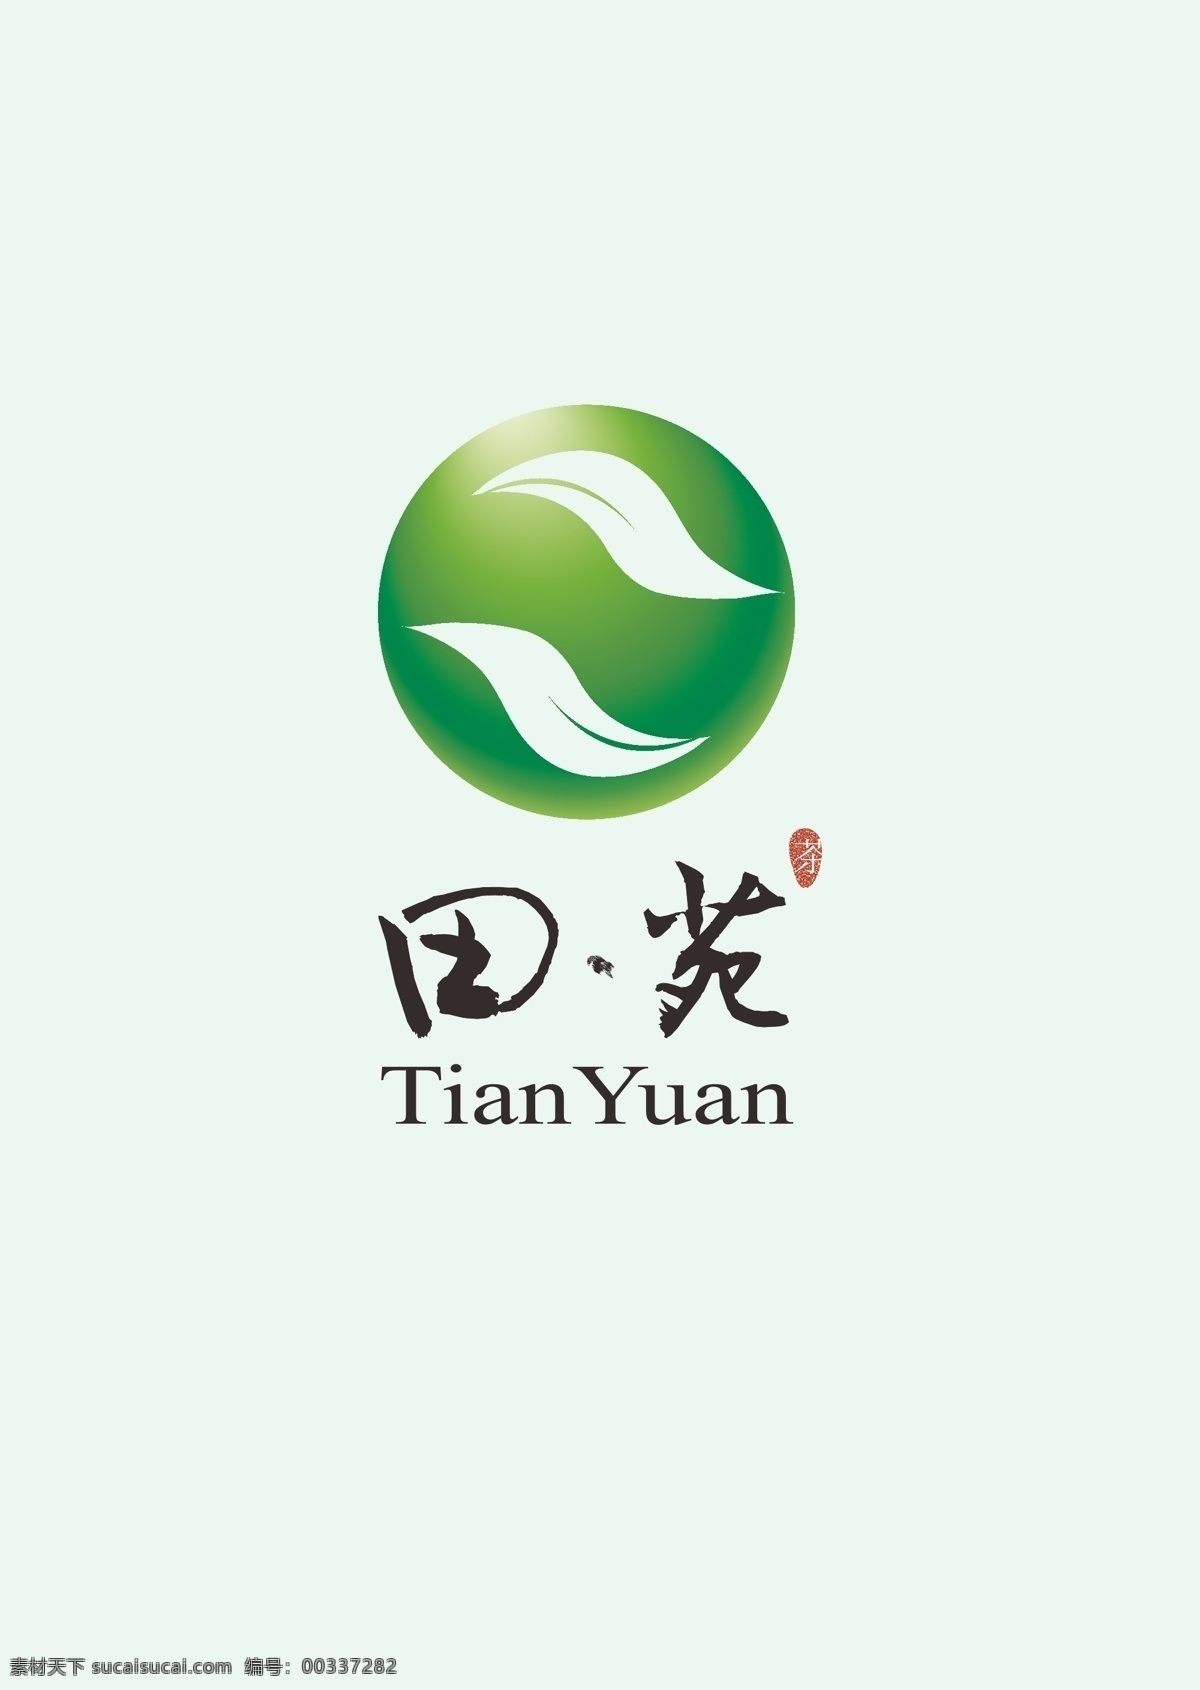 茶叶 logo 茶叶logo 中 绿色 代表 地球 征着 茶文化 能够 传播 更 远 球体 上 面的 两 片 相互交映 象征 人 带来 安全 健康 高品质 的意义